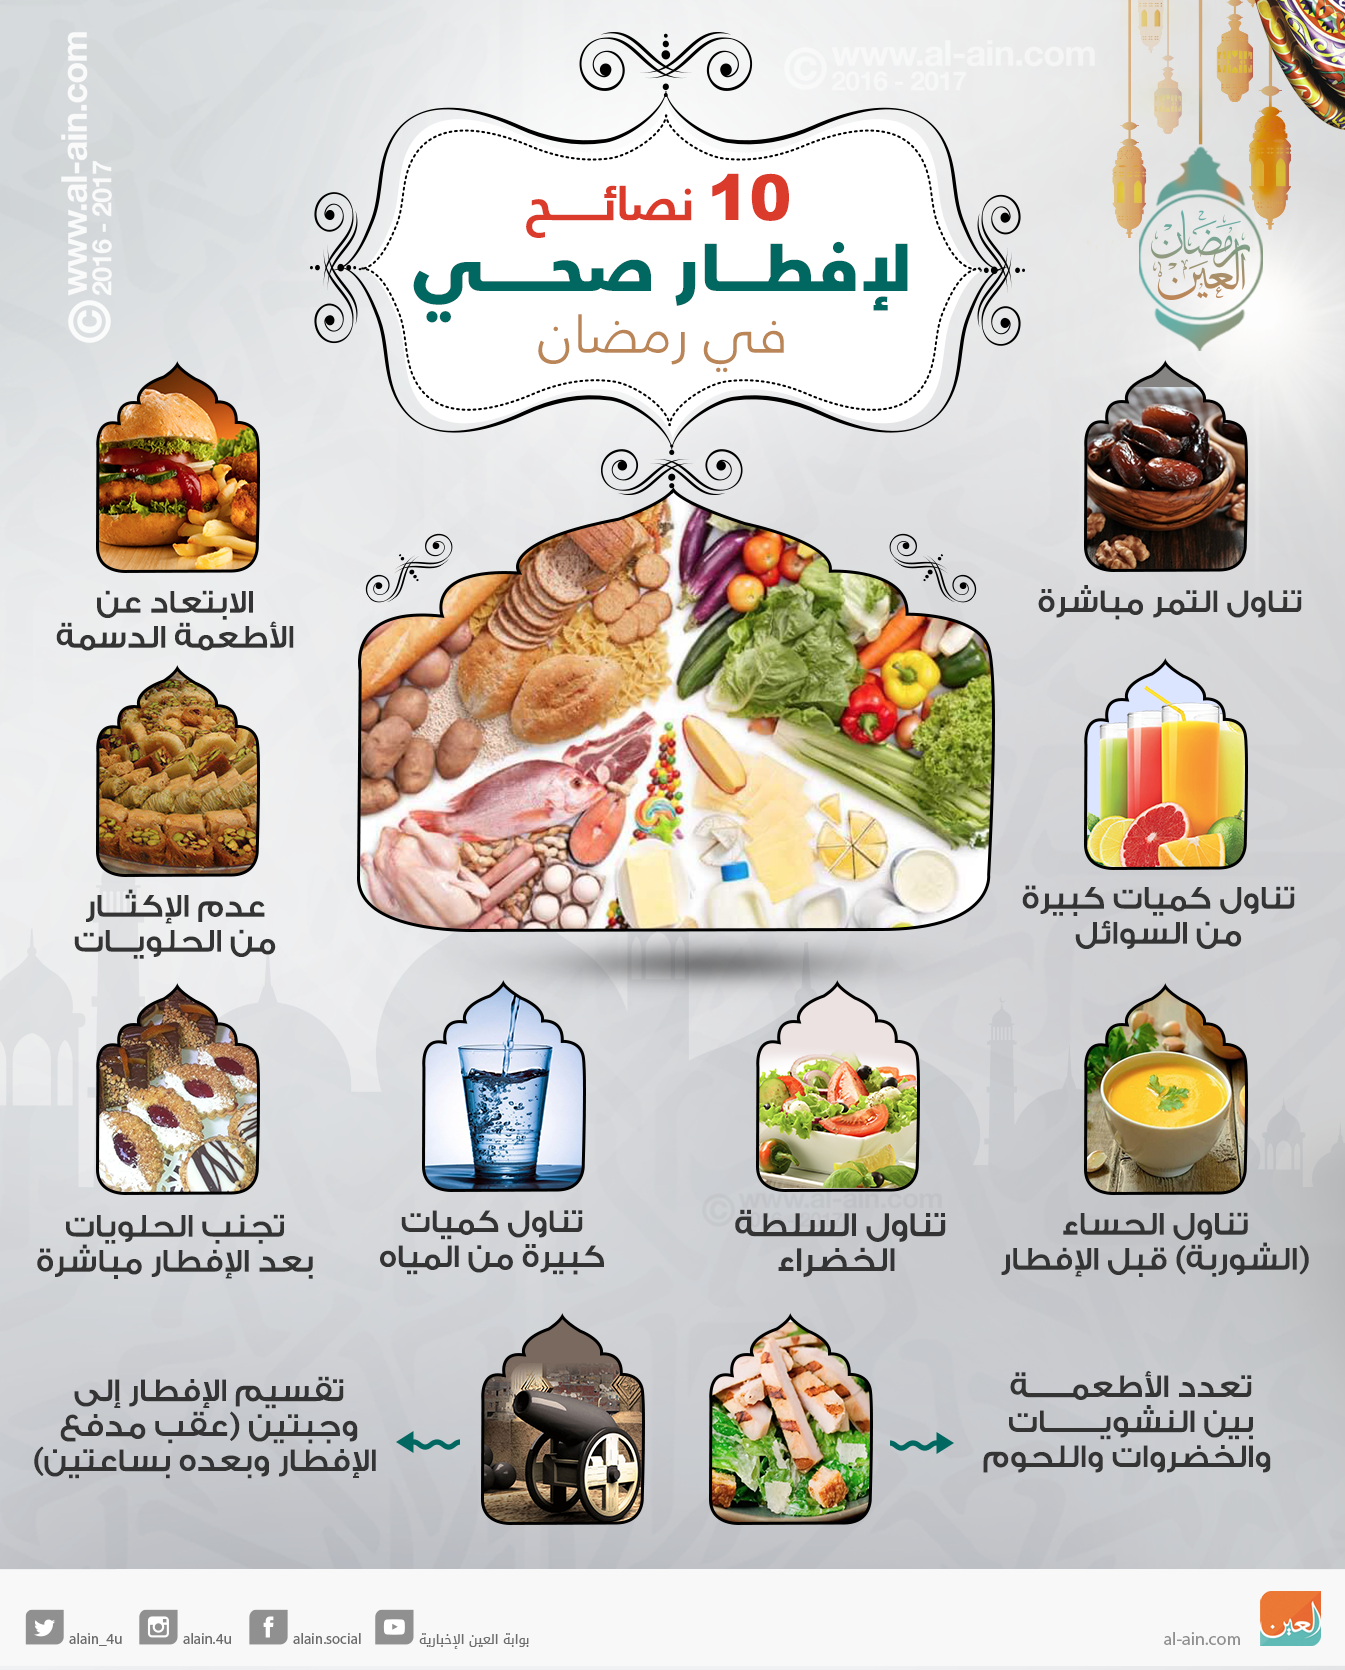 أفضل فطور صحي لمرضى السكري في رمضان ما هو افضل فطور صحي في رمضان